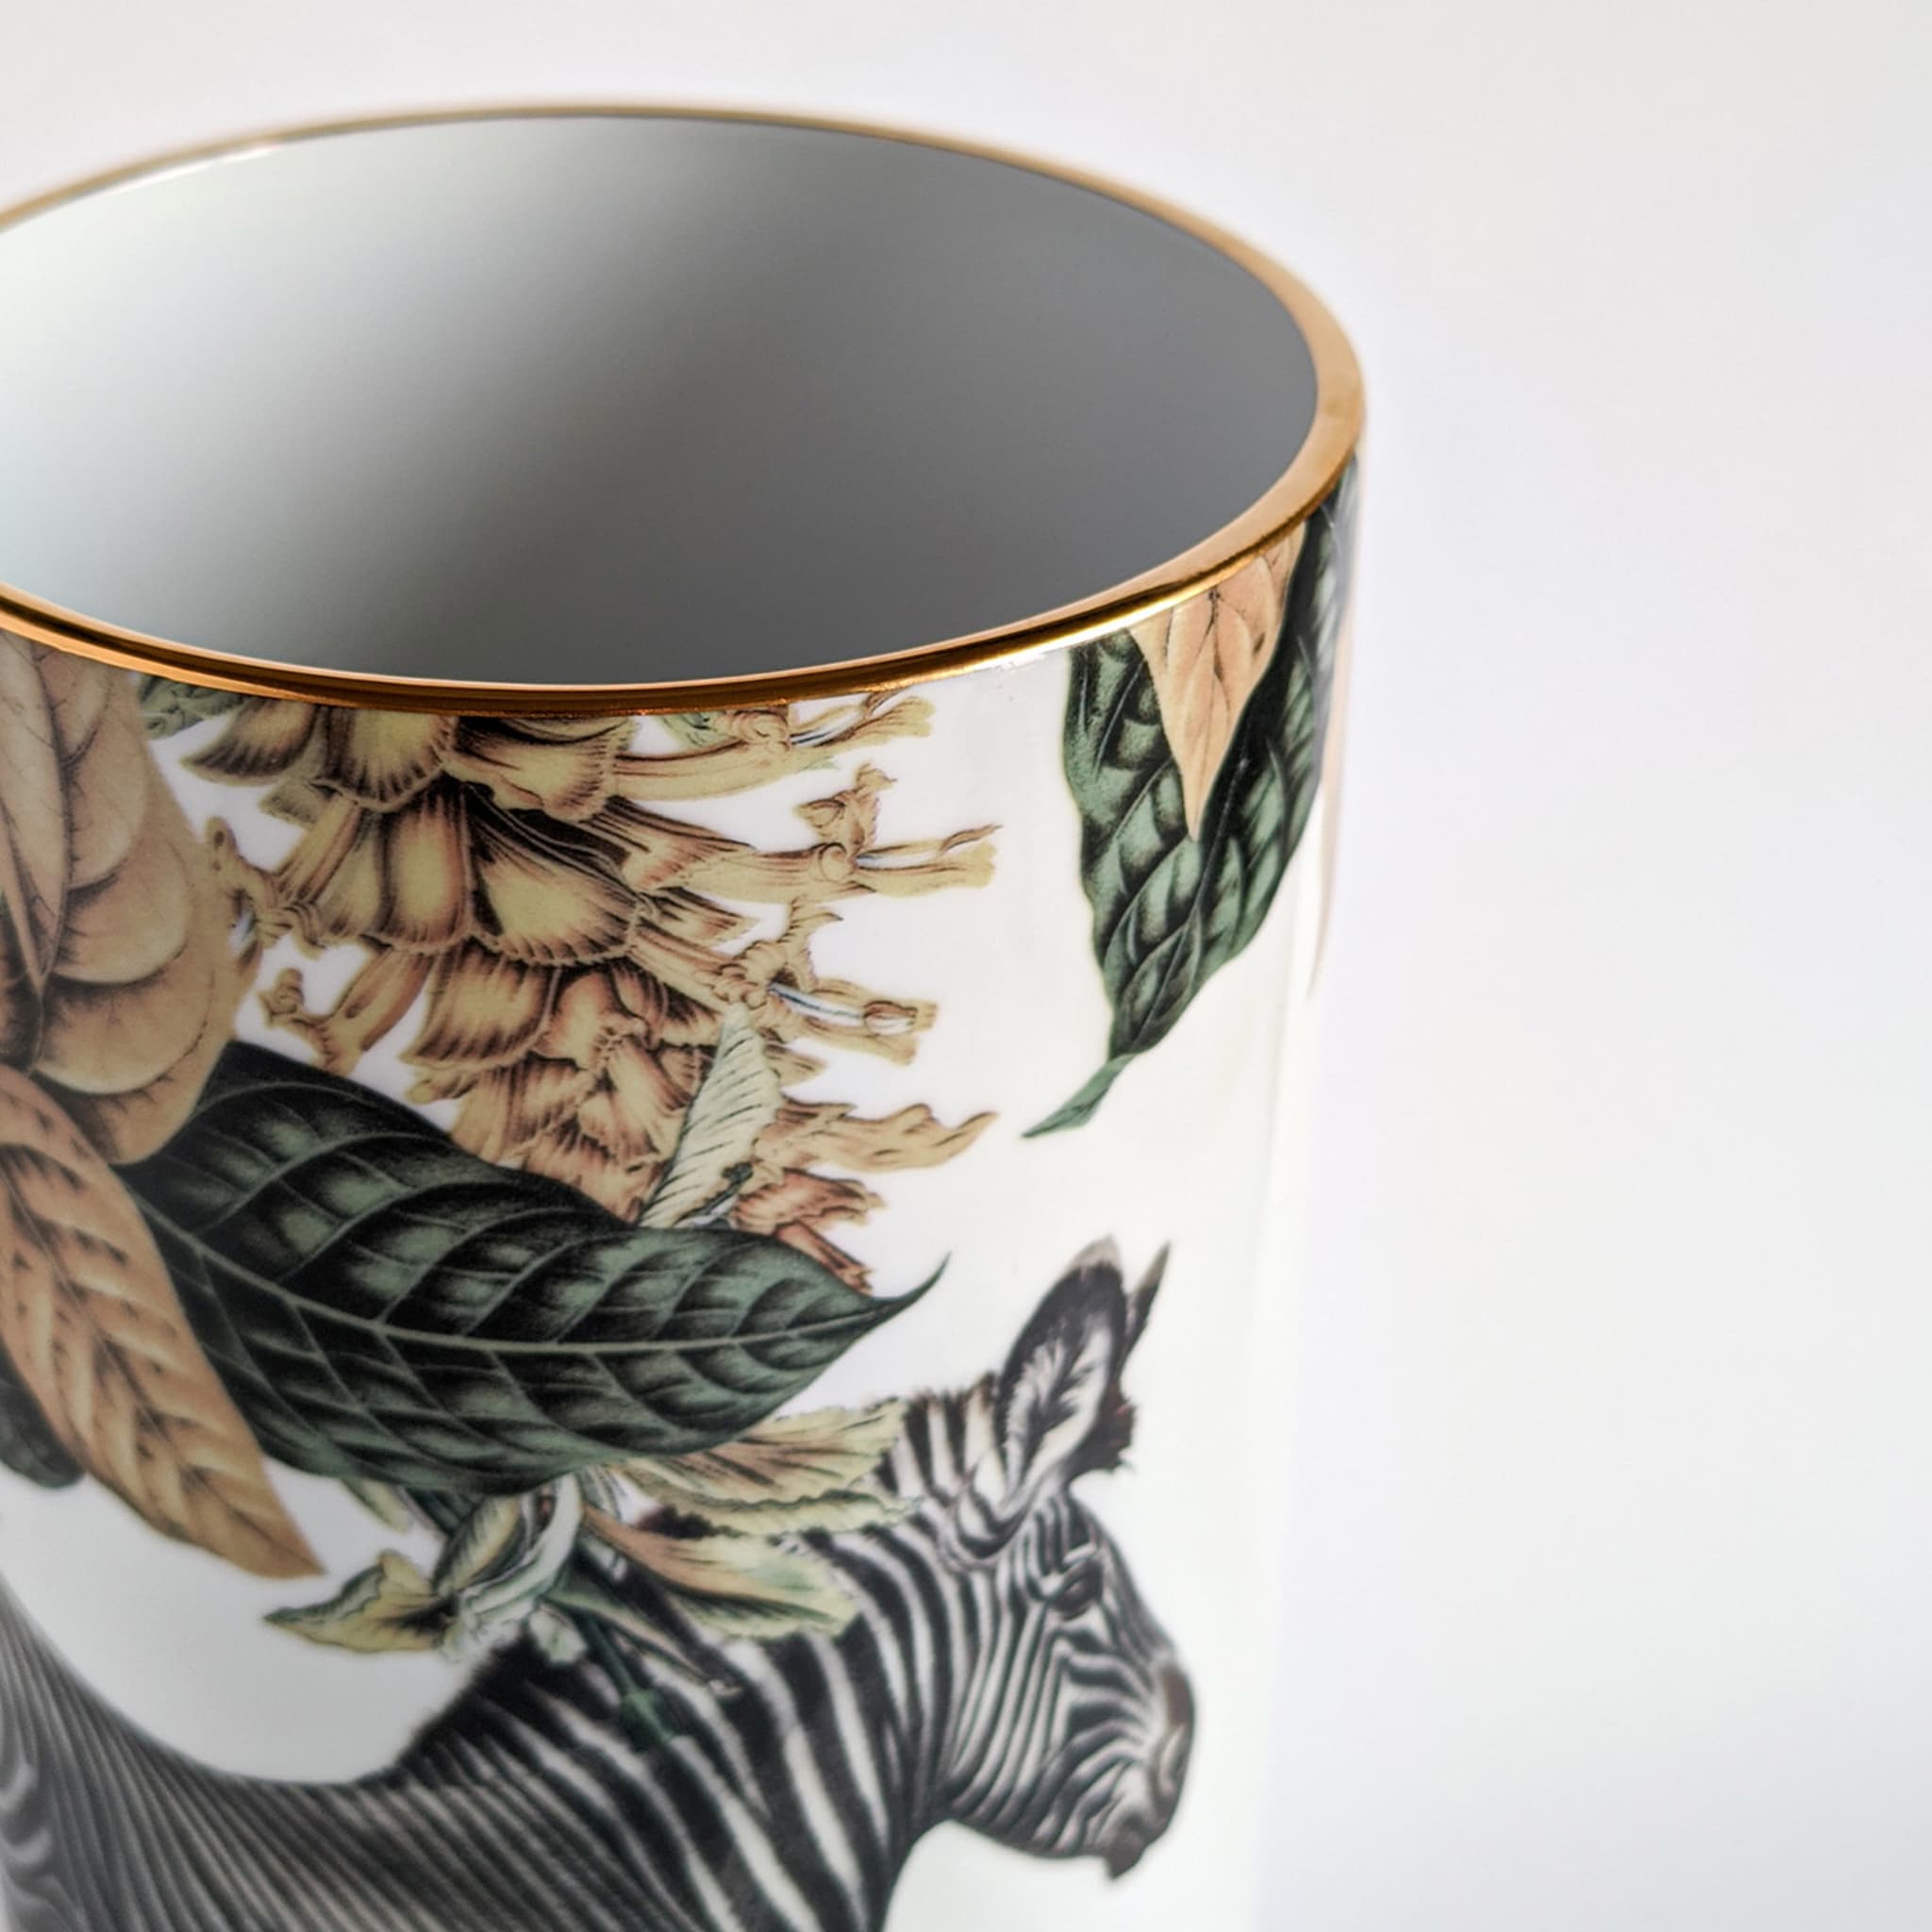 Animalia Porcelain Cylindrical Vase With Zebra - Alternative view 3